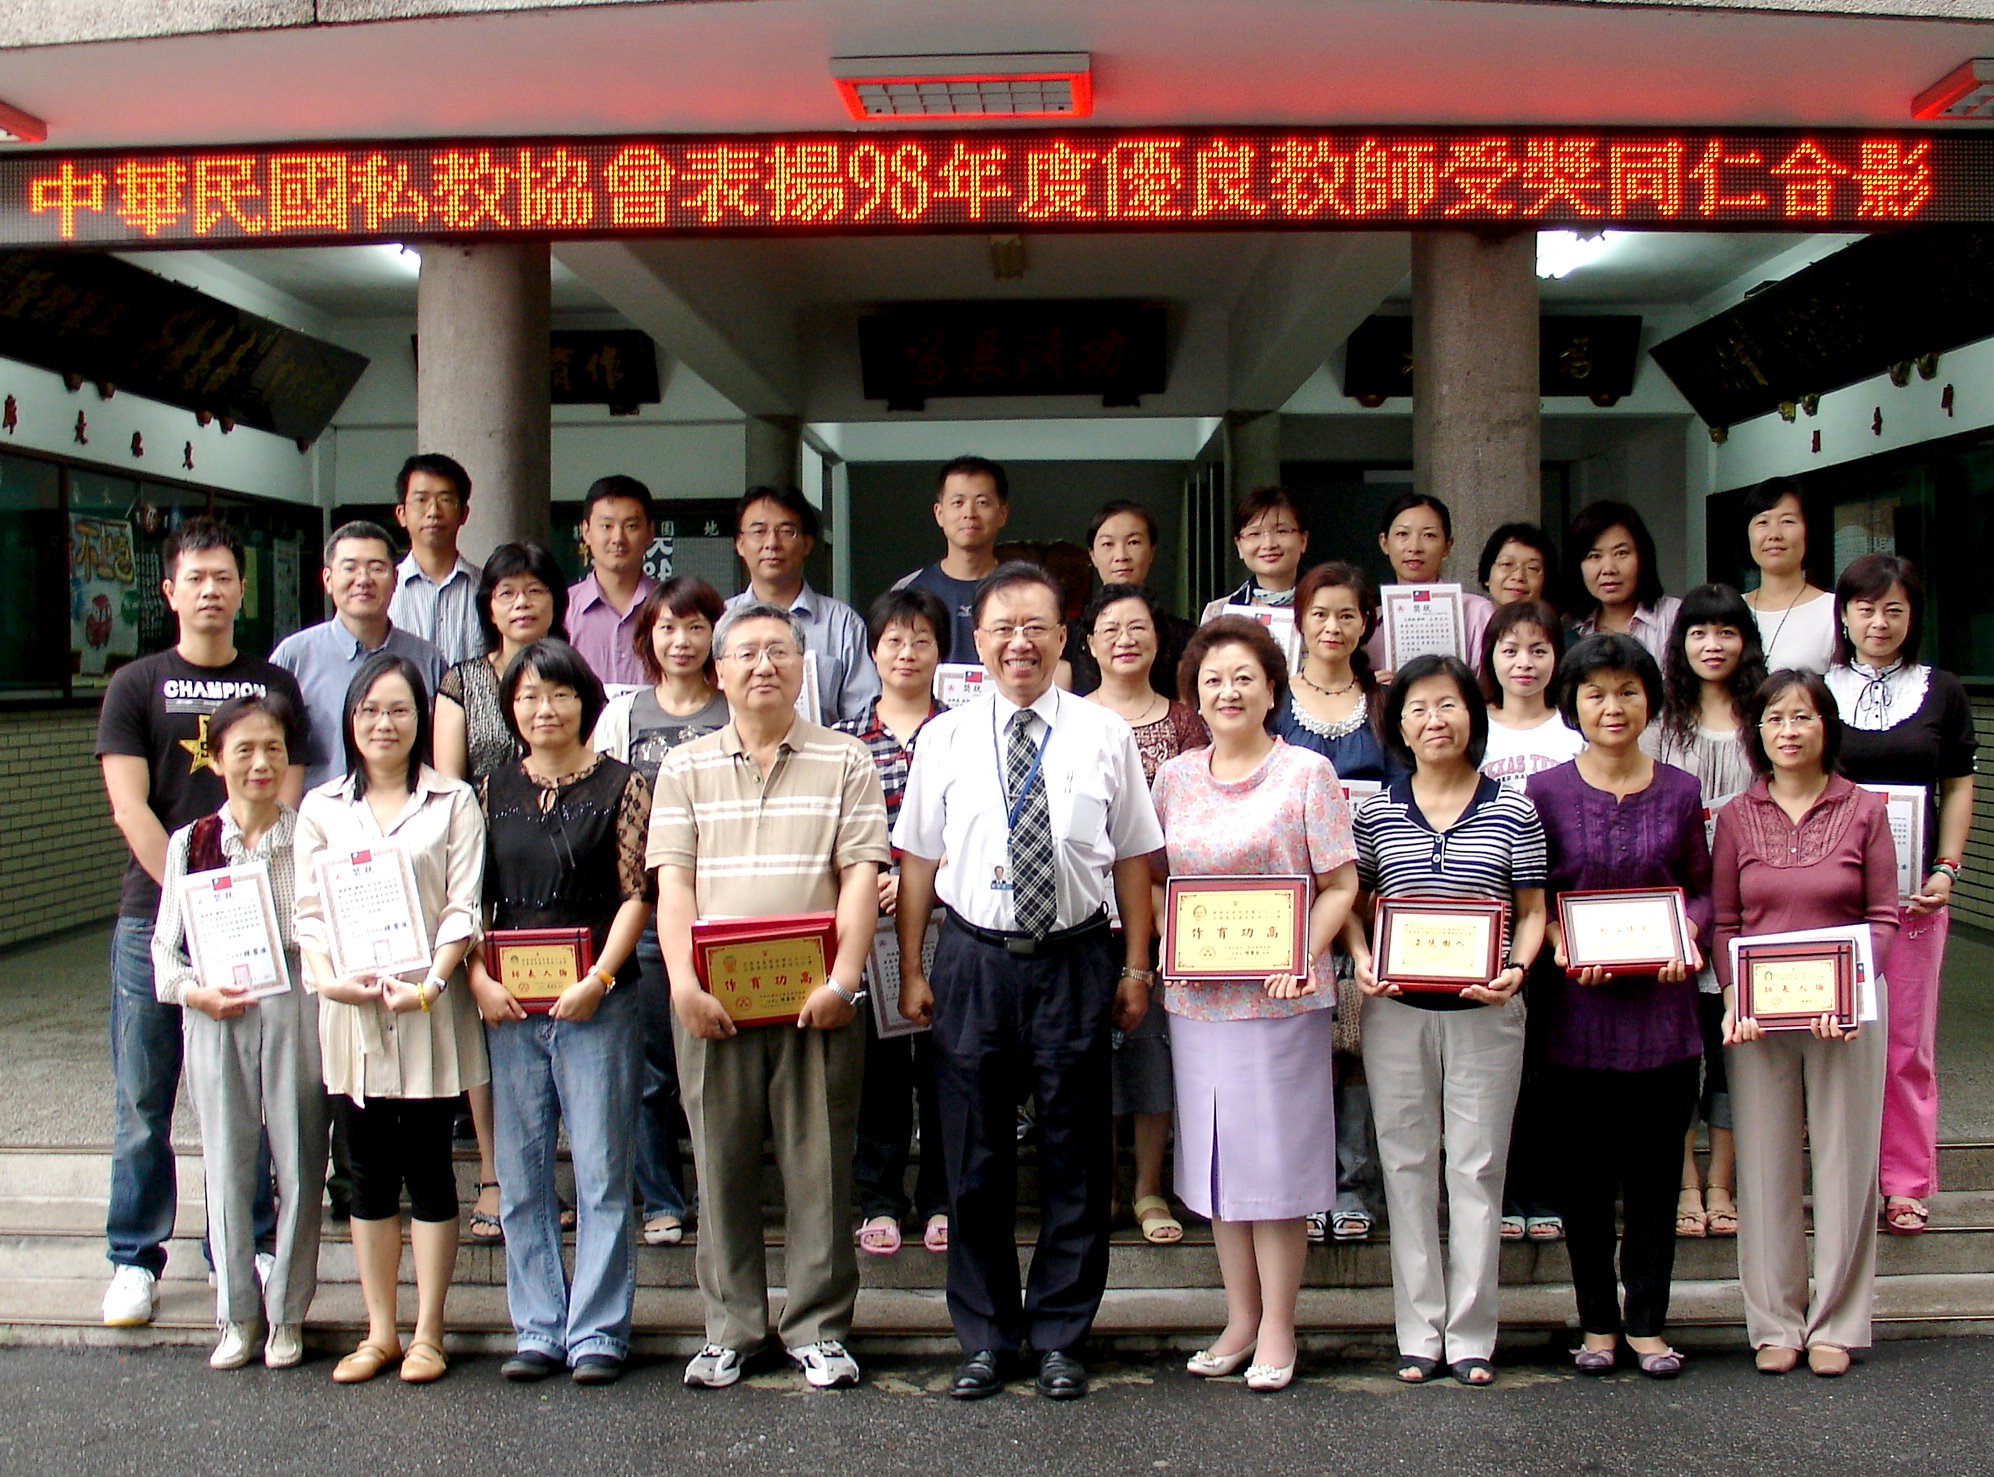 桃育呂傑男等三十位老師獲頒私教協會大仁、大智、大勇及模範教師獎